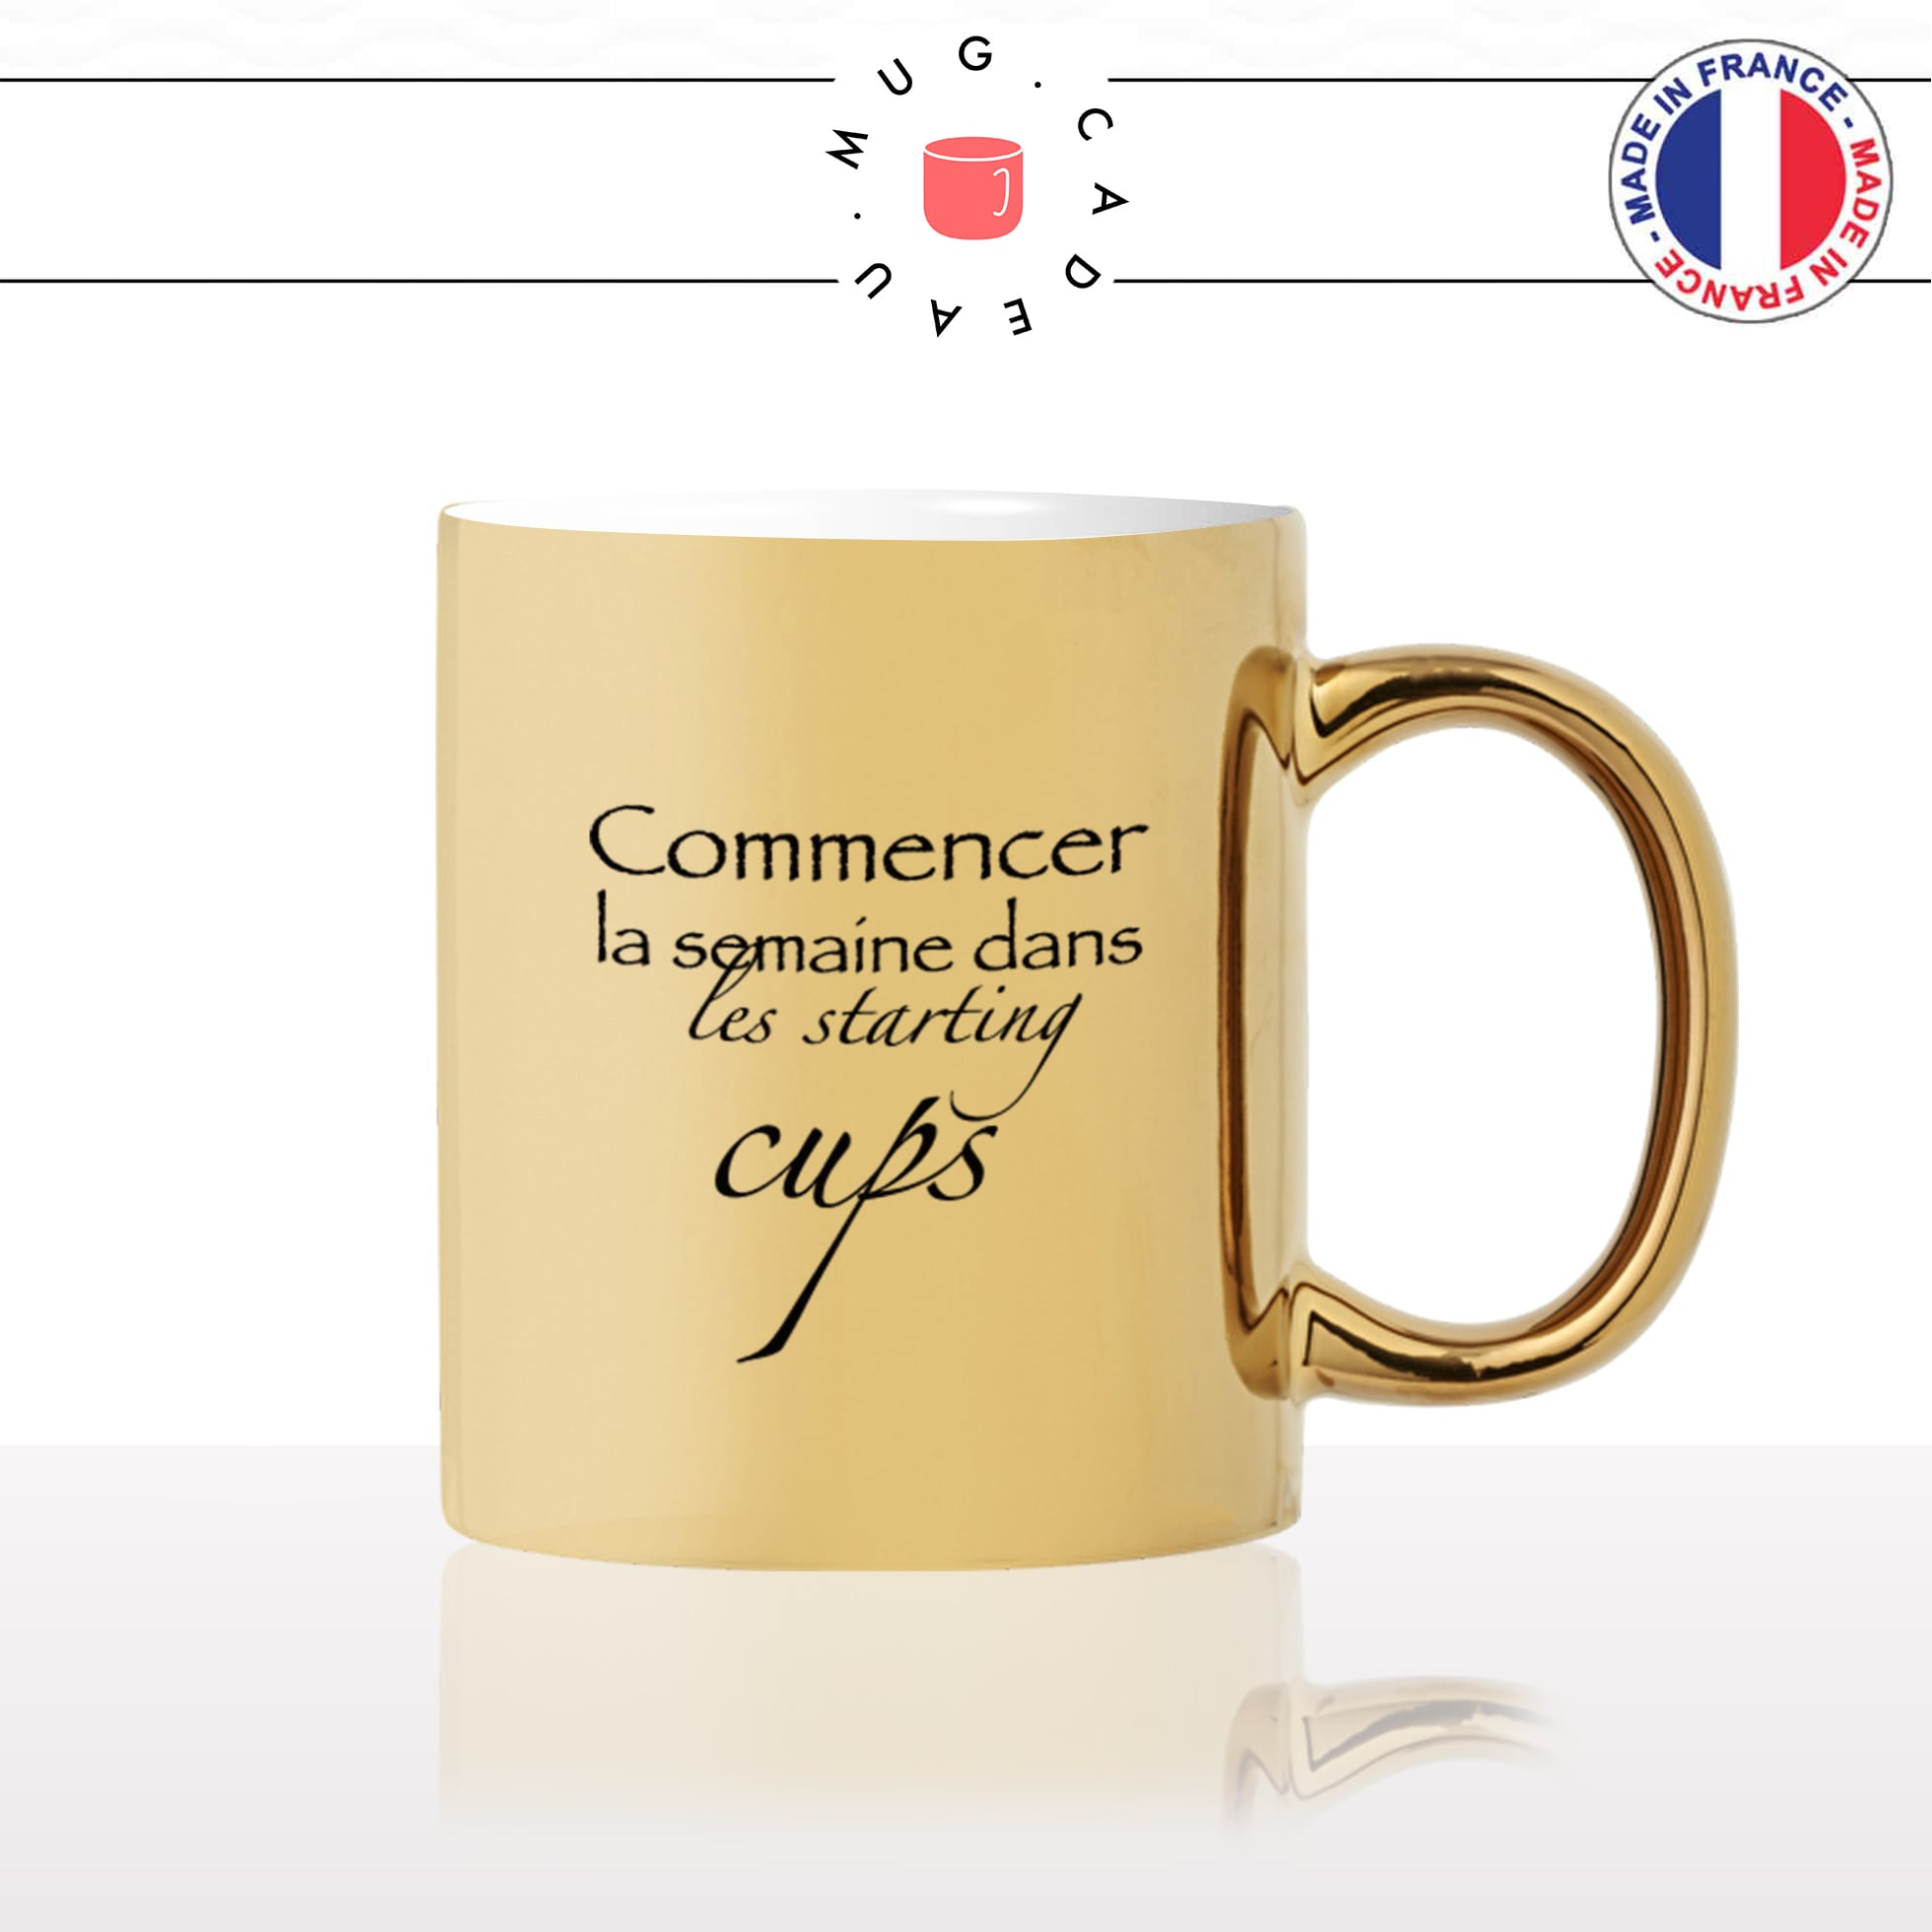 mug-tasse-doré-or-gold-commencer-semaine-starting-cup-drole-lundi-collegue-humour-fun-idée-cadeau-personnalisé-café-thé2-min